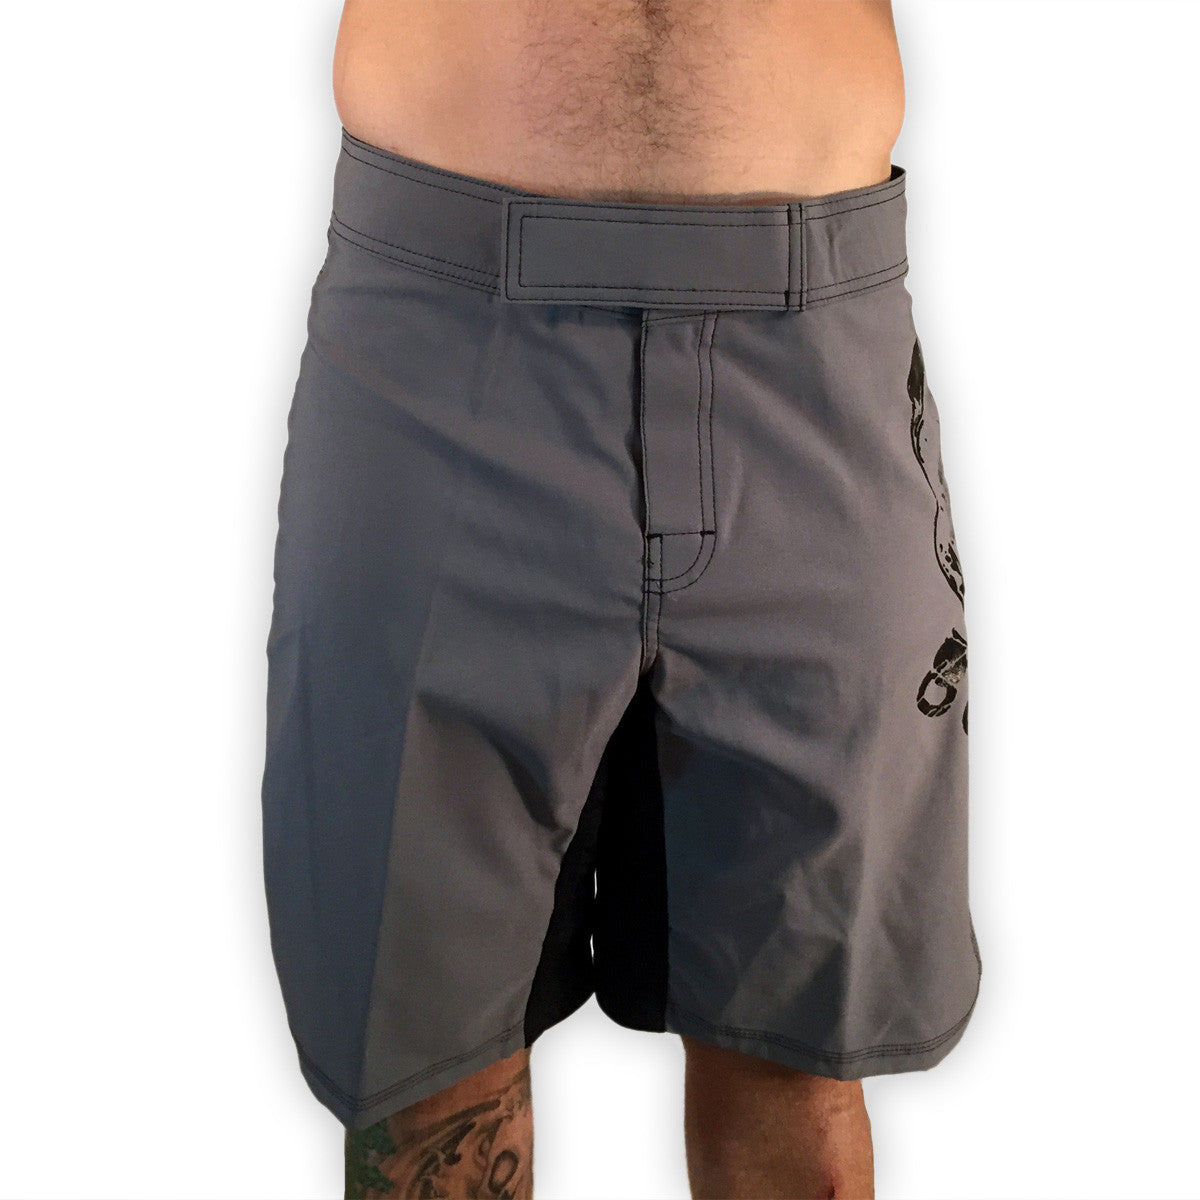 Pitbull WOD Shorts Gray Mens Shorts - 321Apparel 